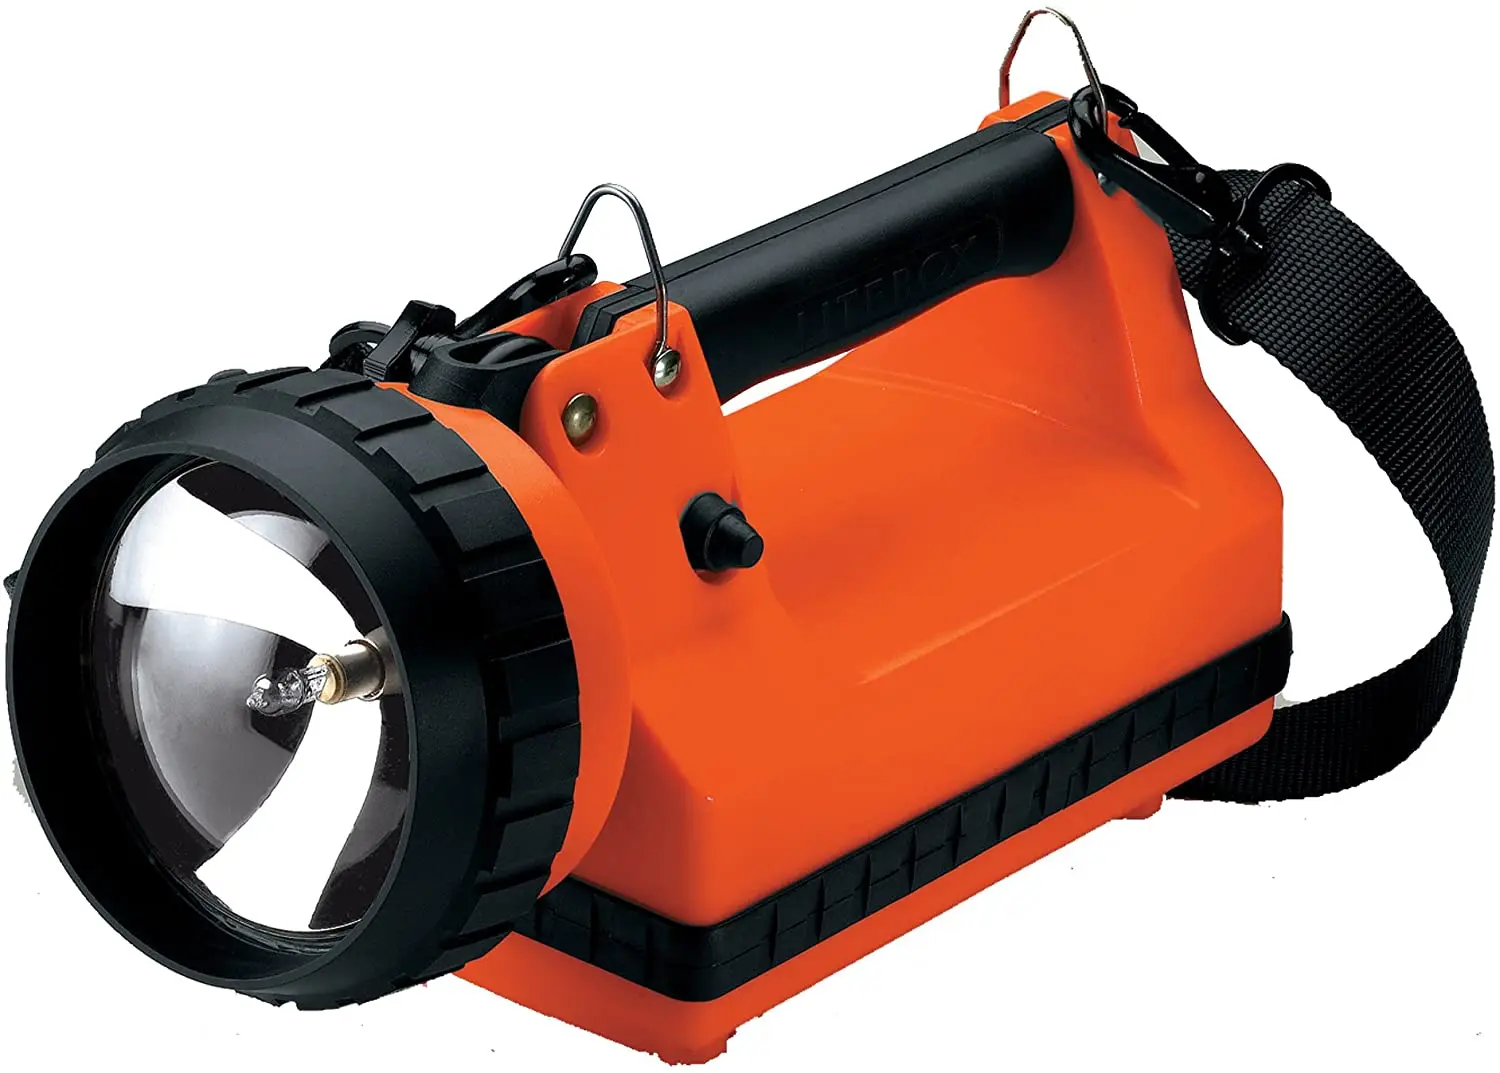 

Фонарик Firebox 45300 с двумя задними светодиодами, подходящими для существующих стеллажей Litebox и без зарядного устройства, оранжевый